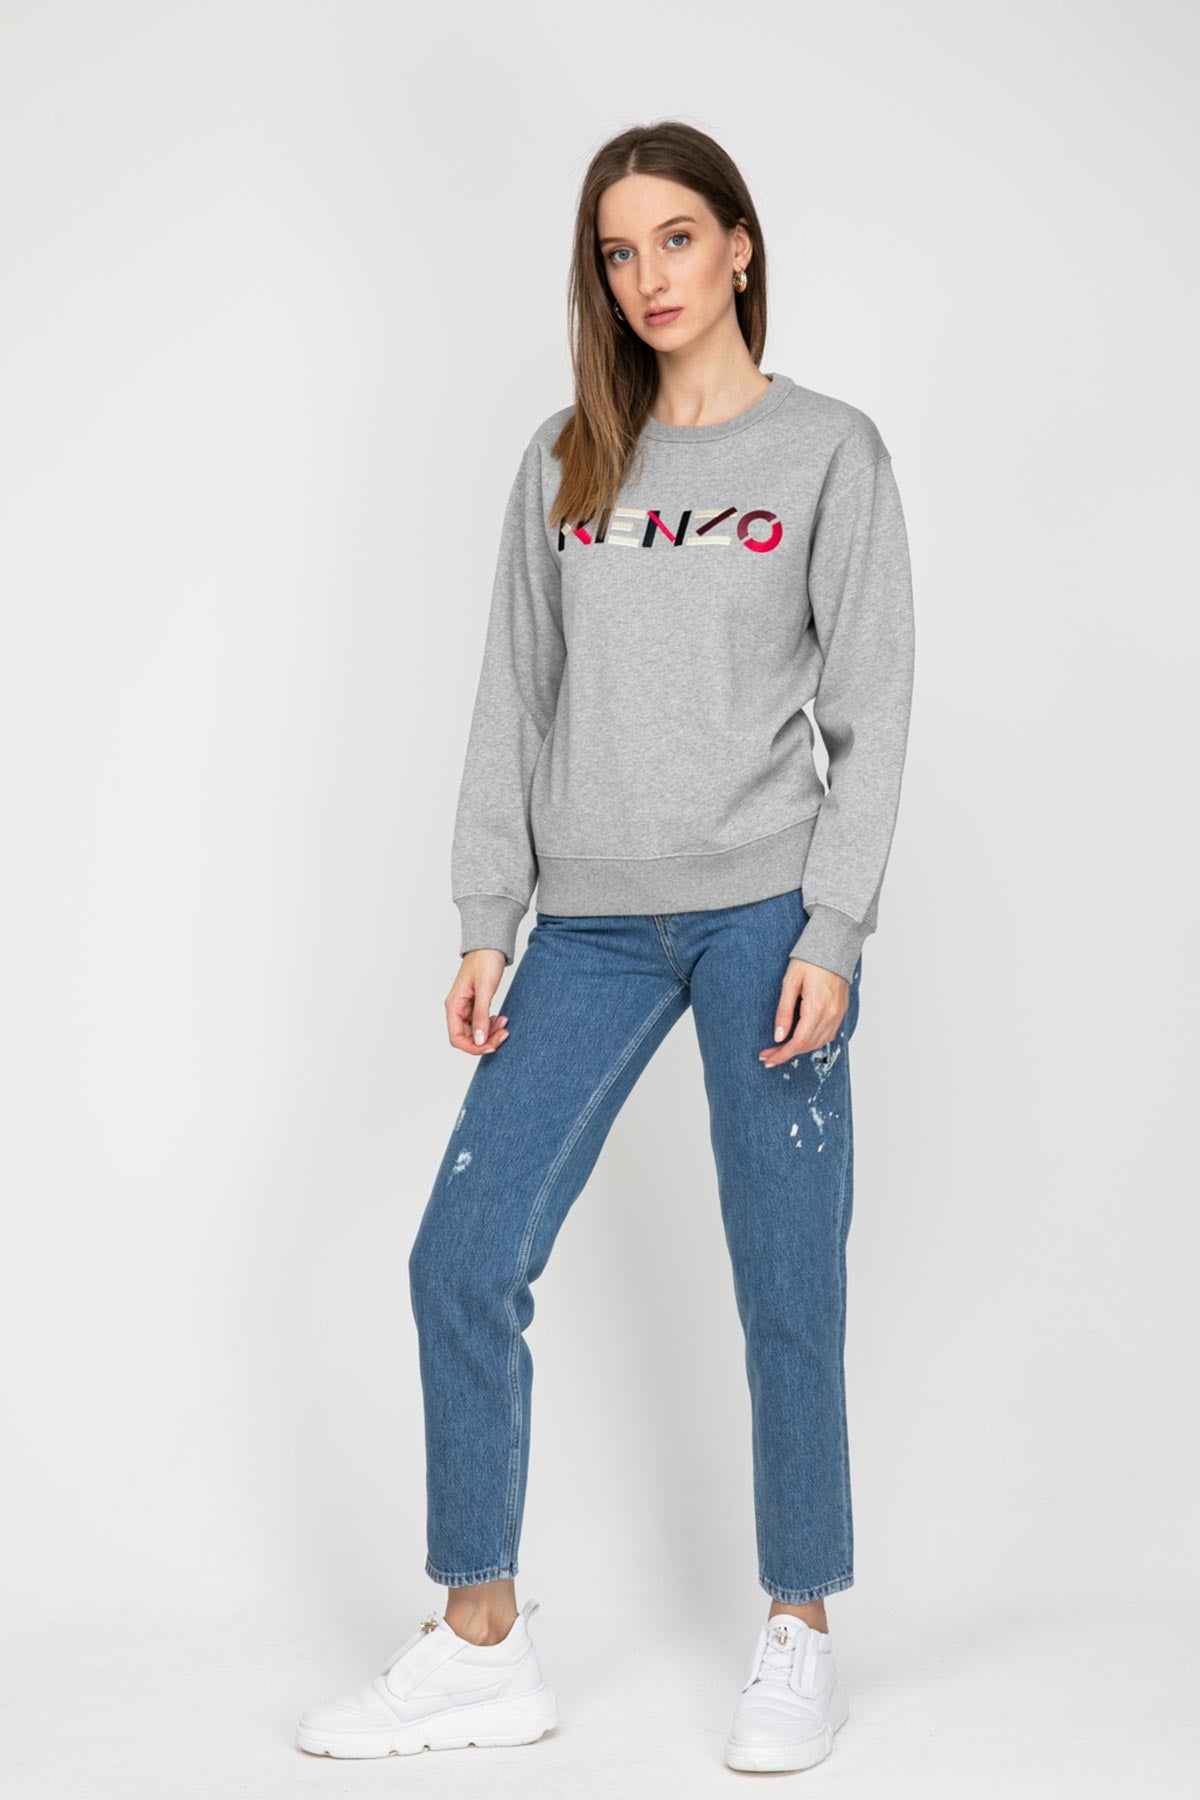 Kenzo Logo Sweatshirt-Libas Trendy Fashion Store